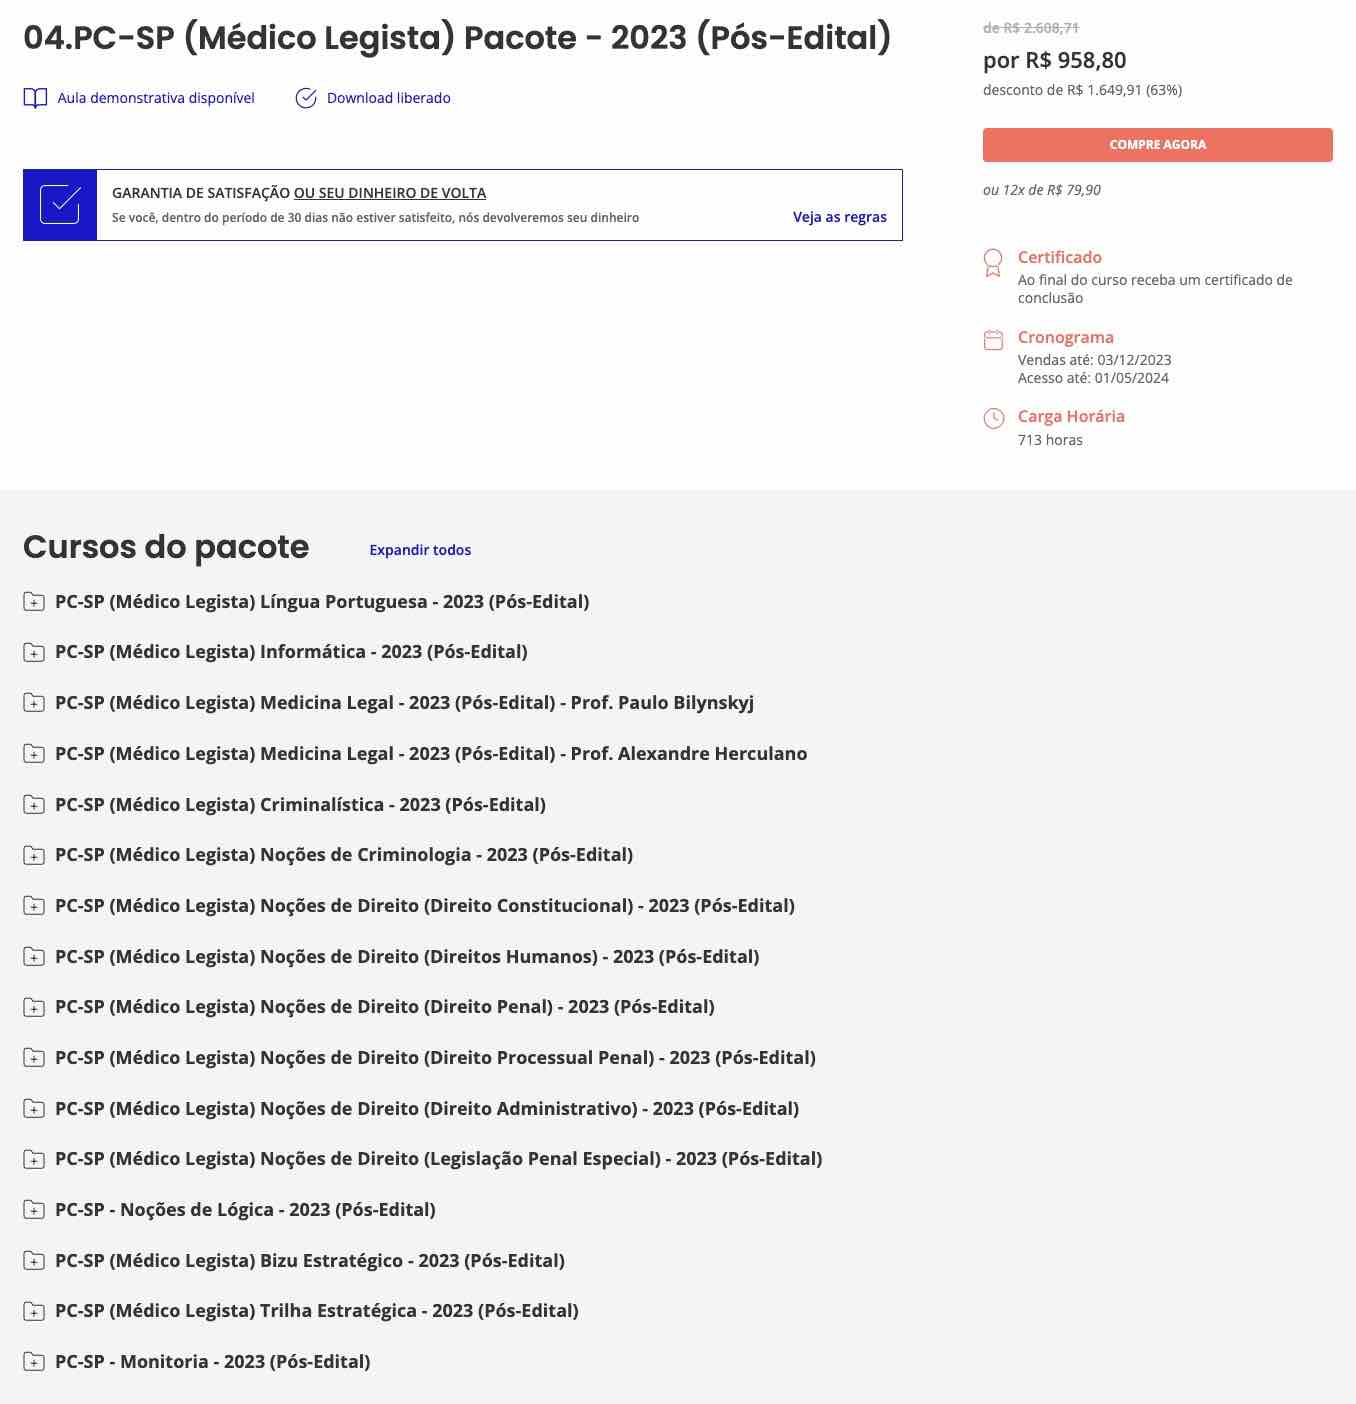 rateio-pc-sp-medico-legista-pos-edital-2023